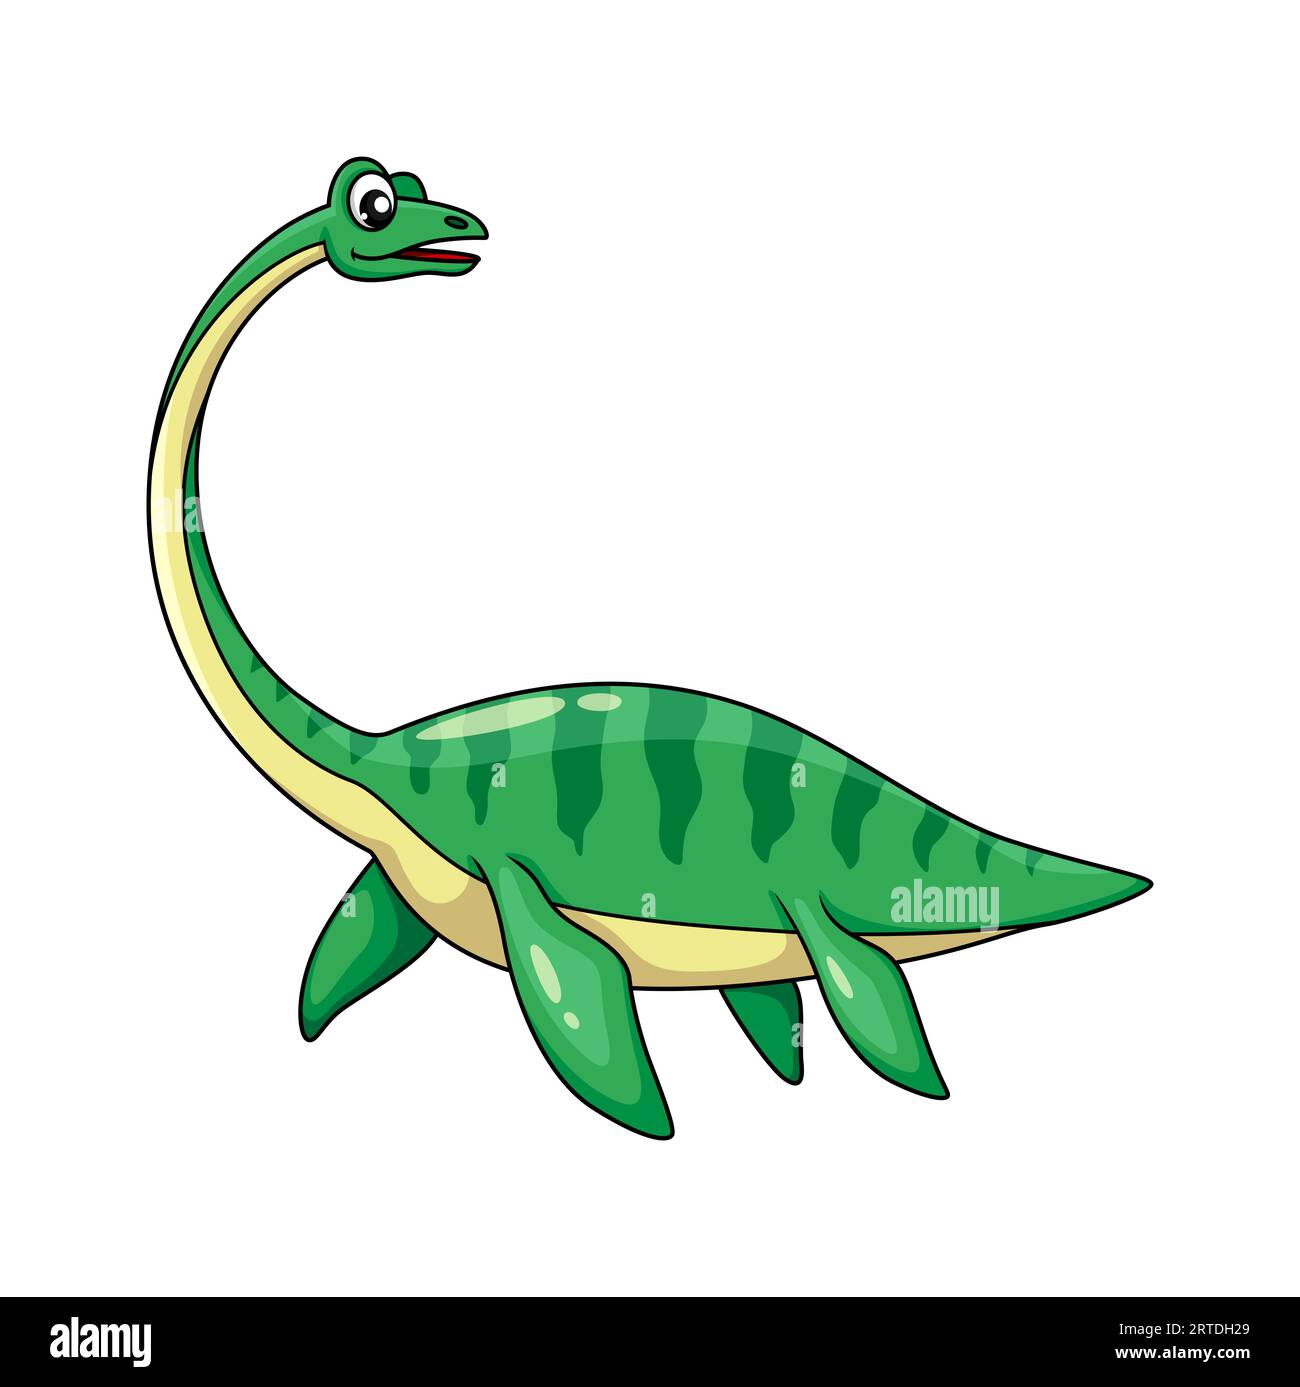 Personnage de dinosaure elasmosaurus de dessin animé. Plésiosaure vecteur isolé de la période du crétacé supérieur, reptile carnivore vertébré sous-marin avec peau verte et palmes. Animal paléontologique à long col Illustration de Vecteur